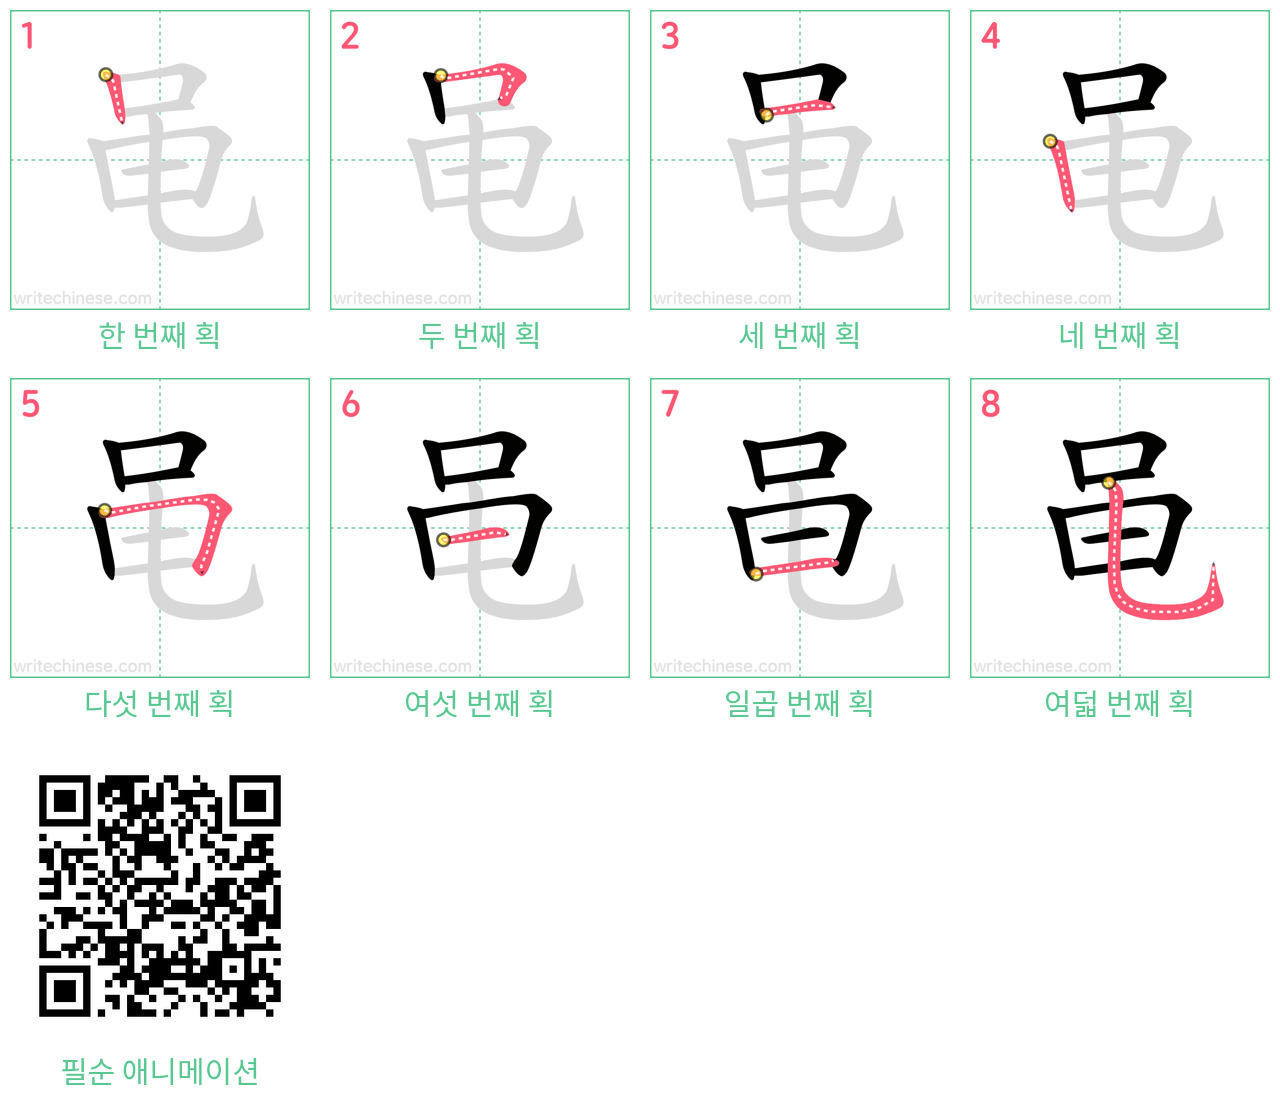 黾 step-by-step stroke order diagrams